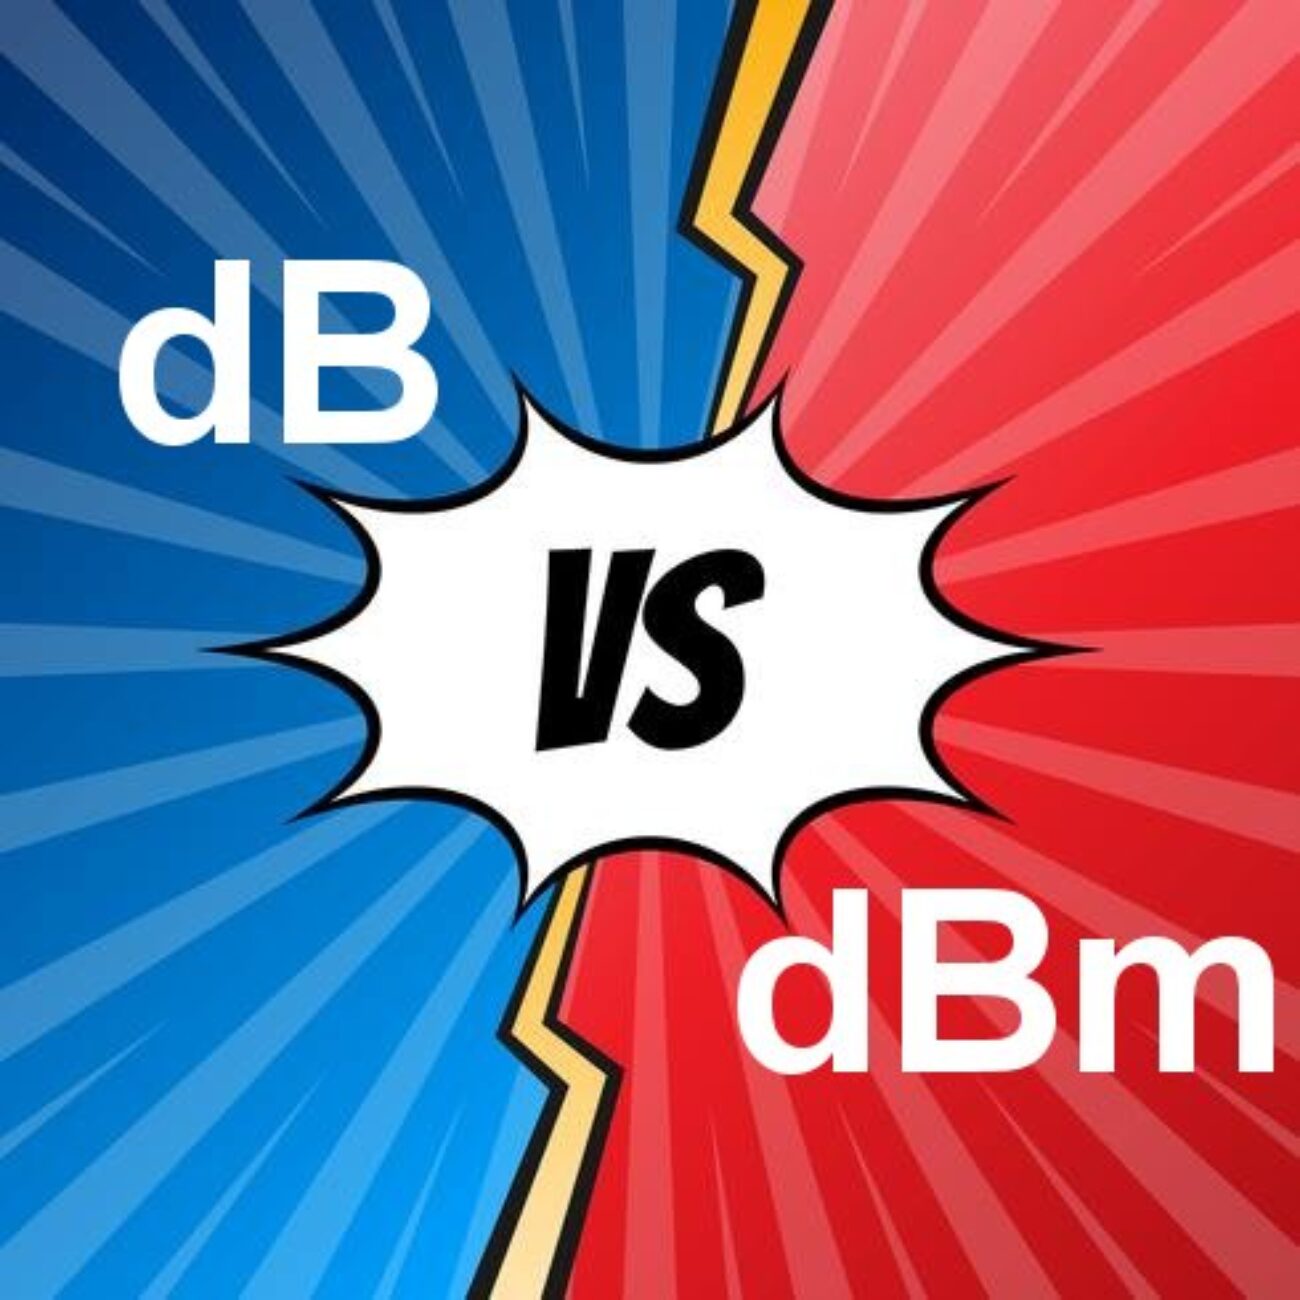 dB-x-dBm-2